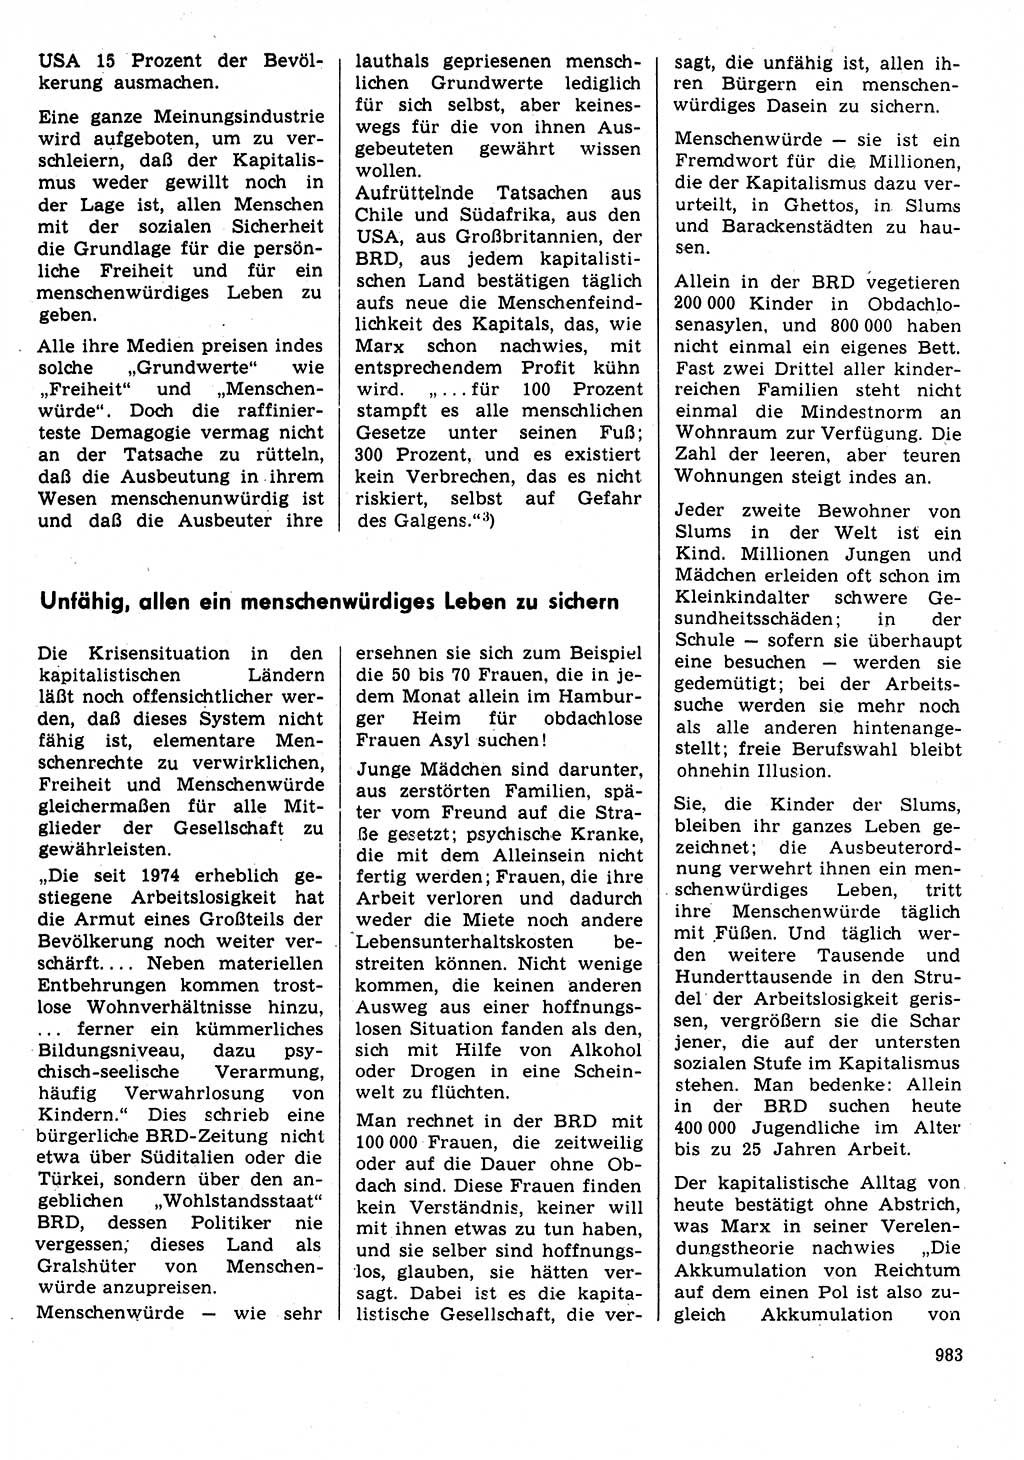 Neuer Weg (NW), Organ des Zentralkomitees (ZK) der SED (Sozialistische Einheitspartei Deutschlands) für Fragen des Parteilebens, 31. Jahrgang [Deutsche Demokratische Republik (DDR)] 1976, Seite 983 (NW ZK SED DDR 1976, S. 983)